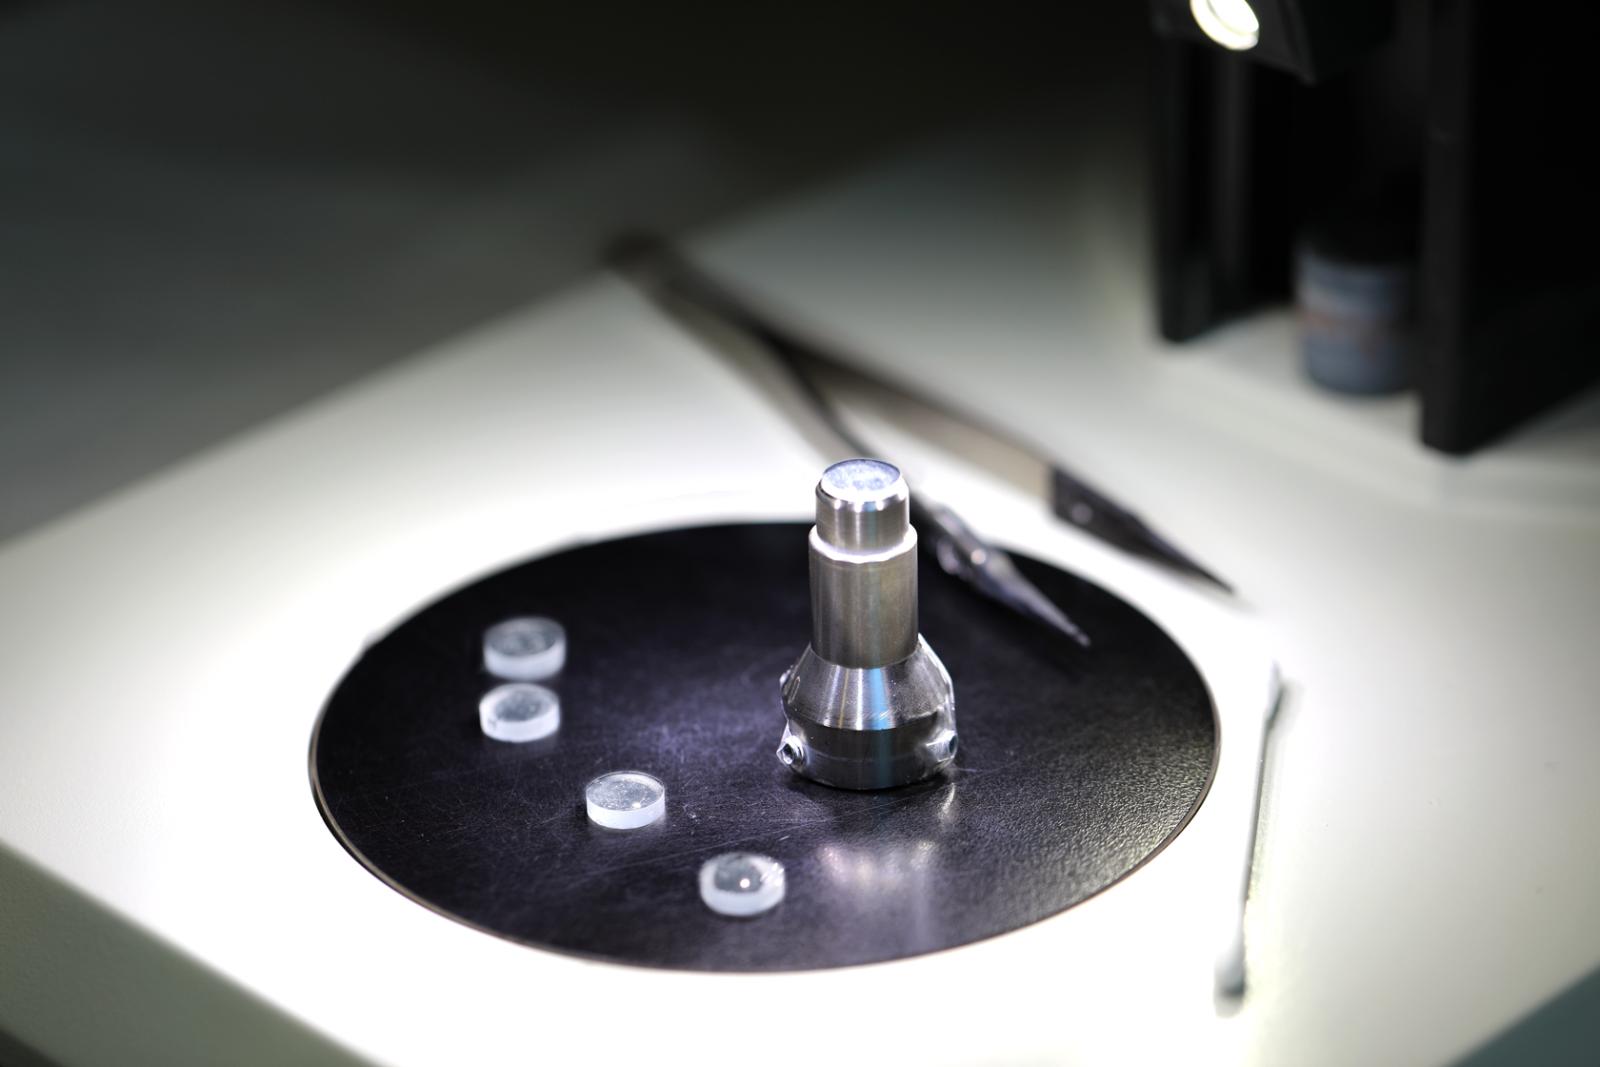 Microlinsen unter Lichtquelle um die Oberflächenbeschaffenheit auf Kratzer zu prüfen.